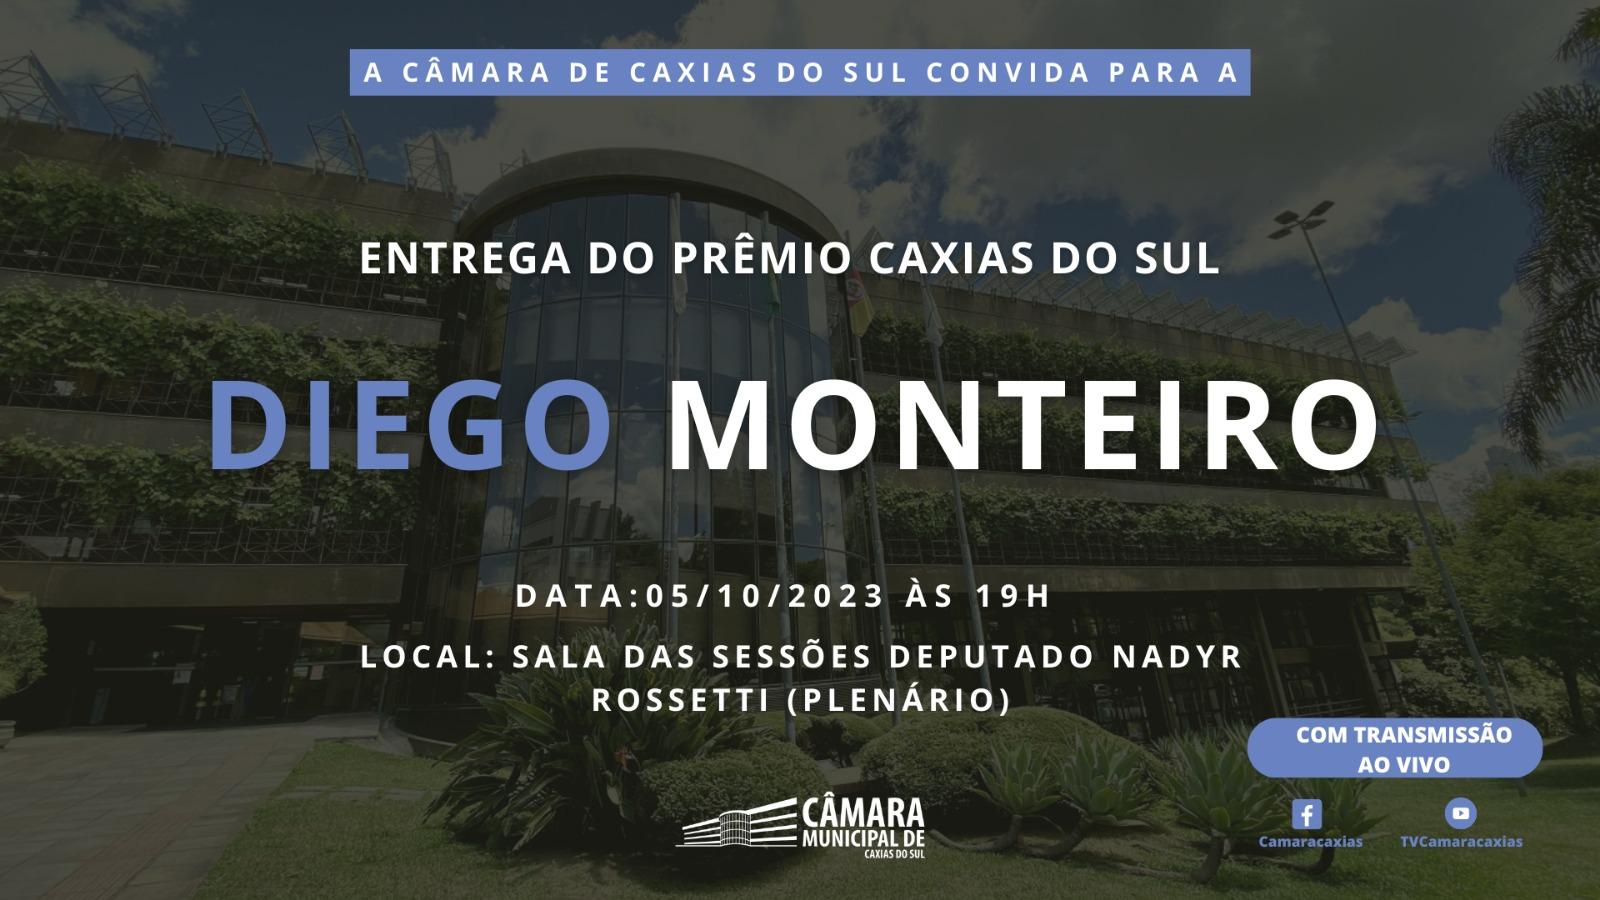 Diego Monteiro vai ser agraciado com Prêmio Caxias pela Câmara